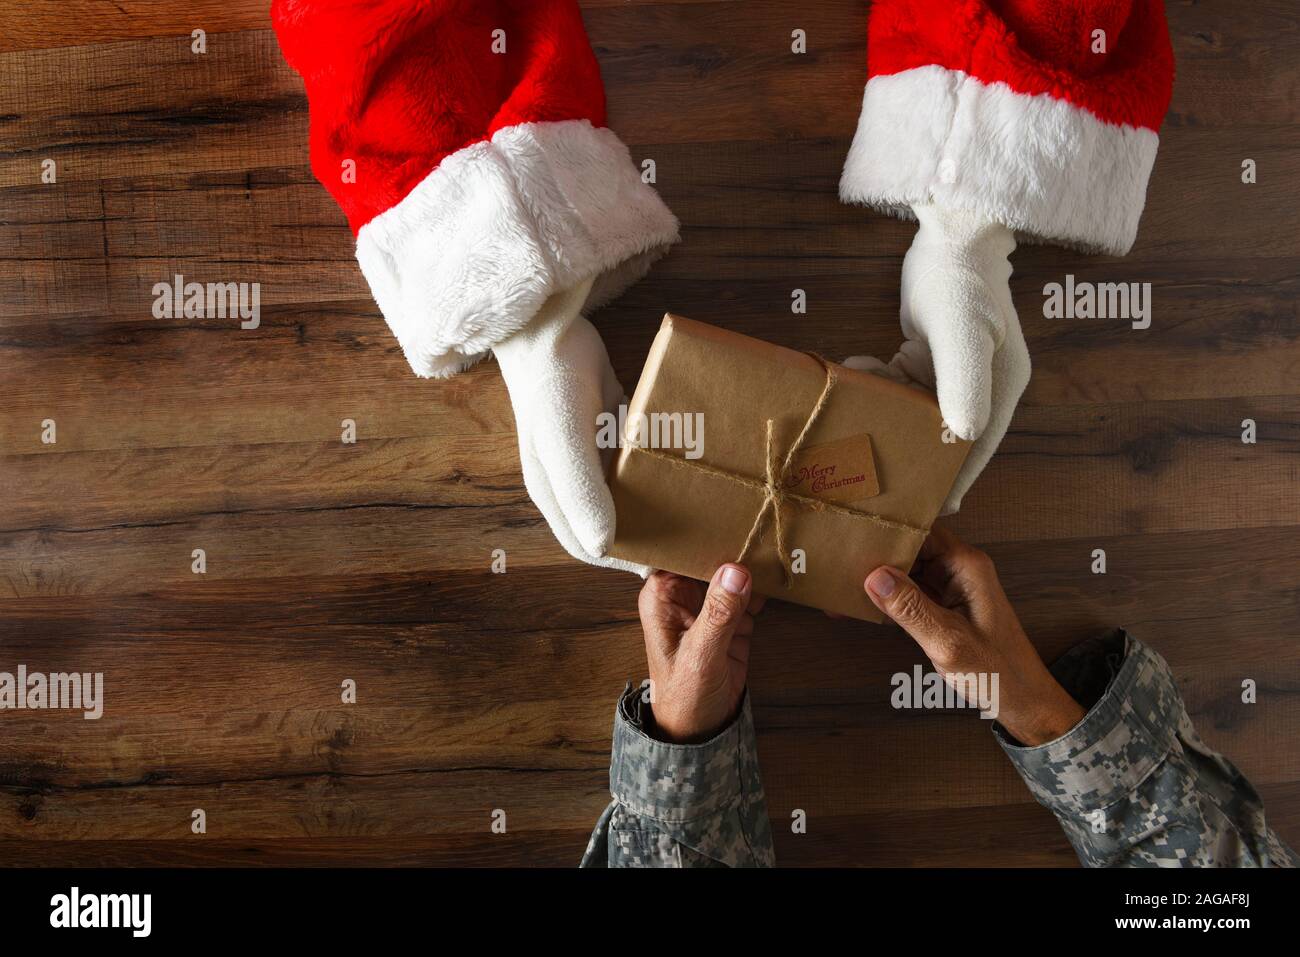 La remise du Père Noël un cadeau de Noël enveloppé d'un soldat. High angle shot avec seulement les mains et les bras visibles. Banque D'Images